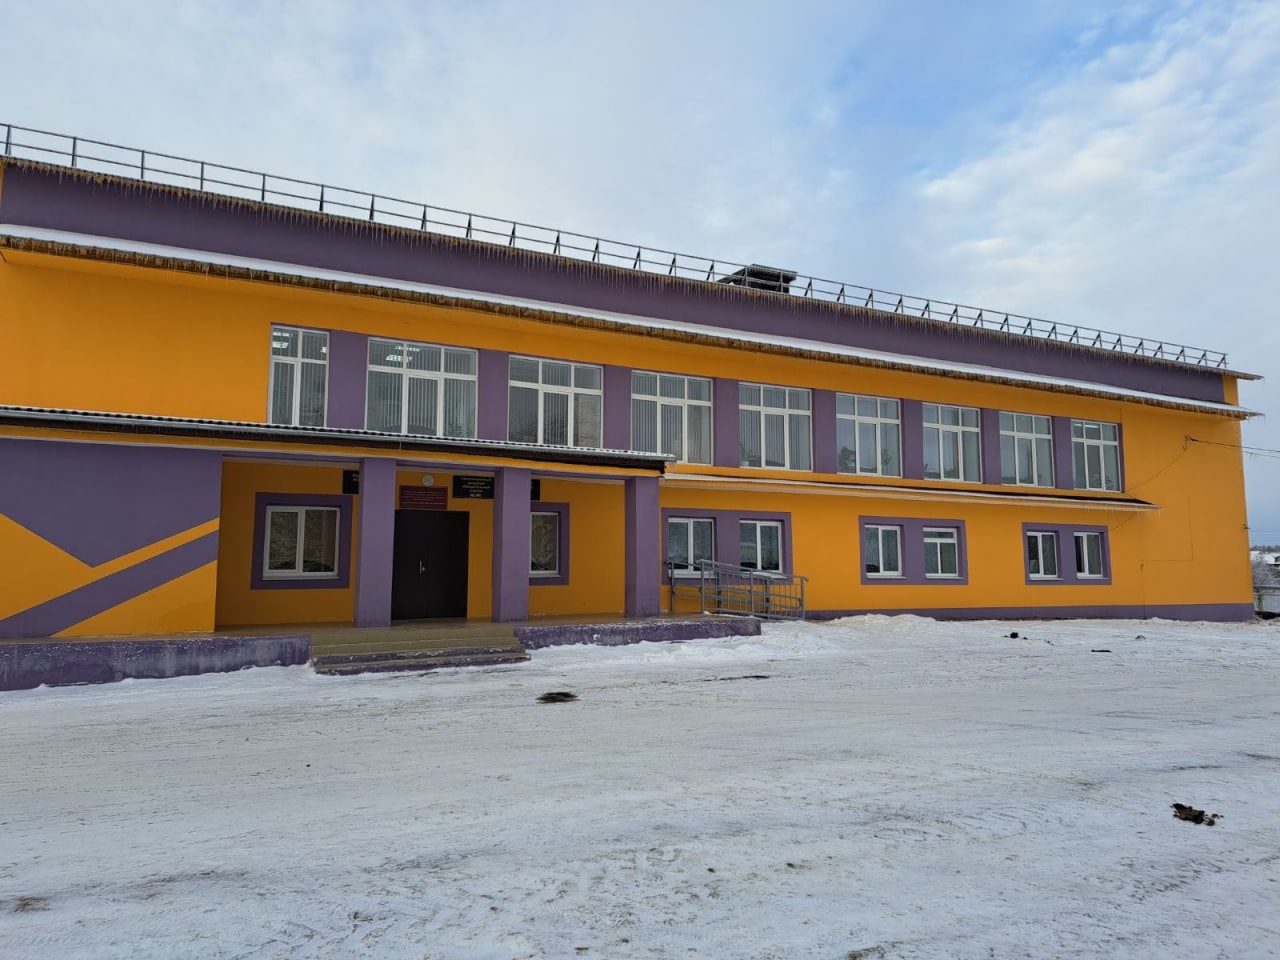 Сельский центр культуры и досуга в Суроватихе отремонтировали за 7 млн рублей